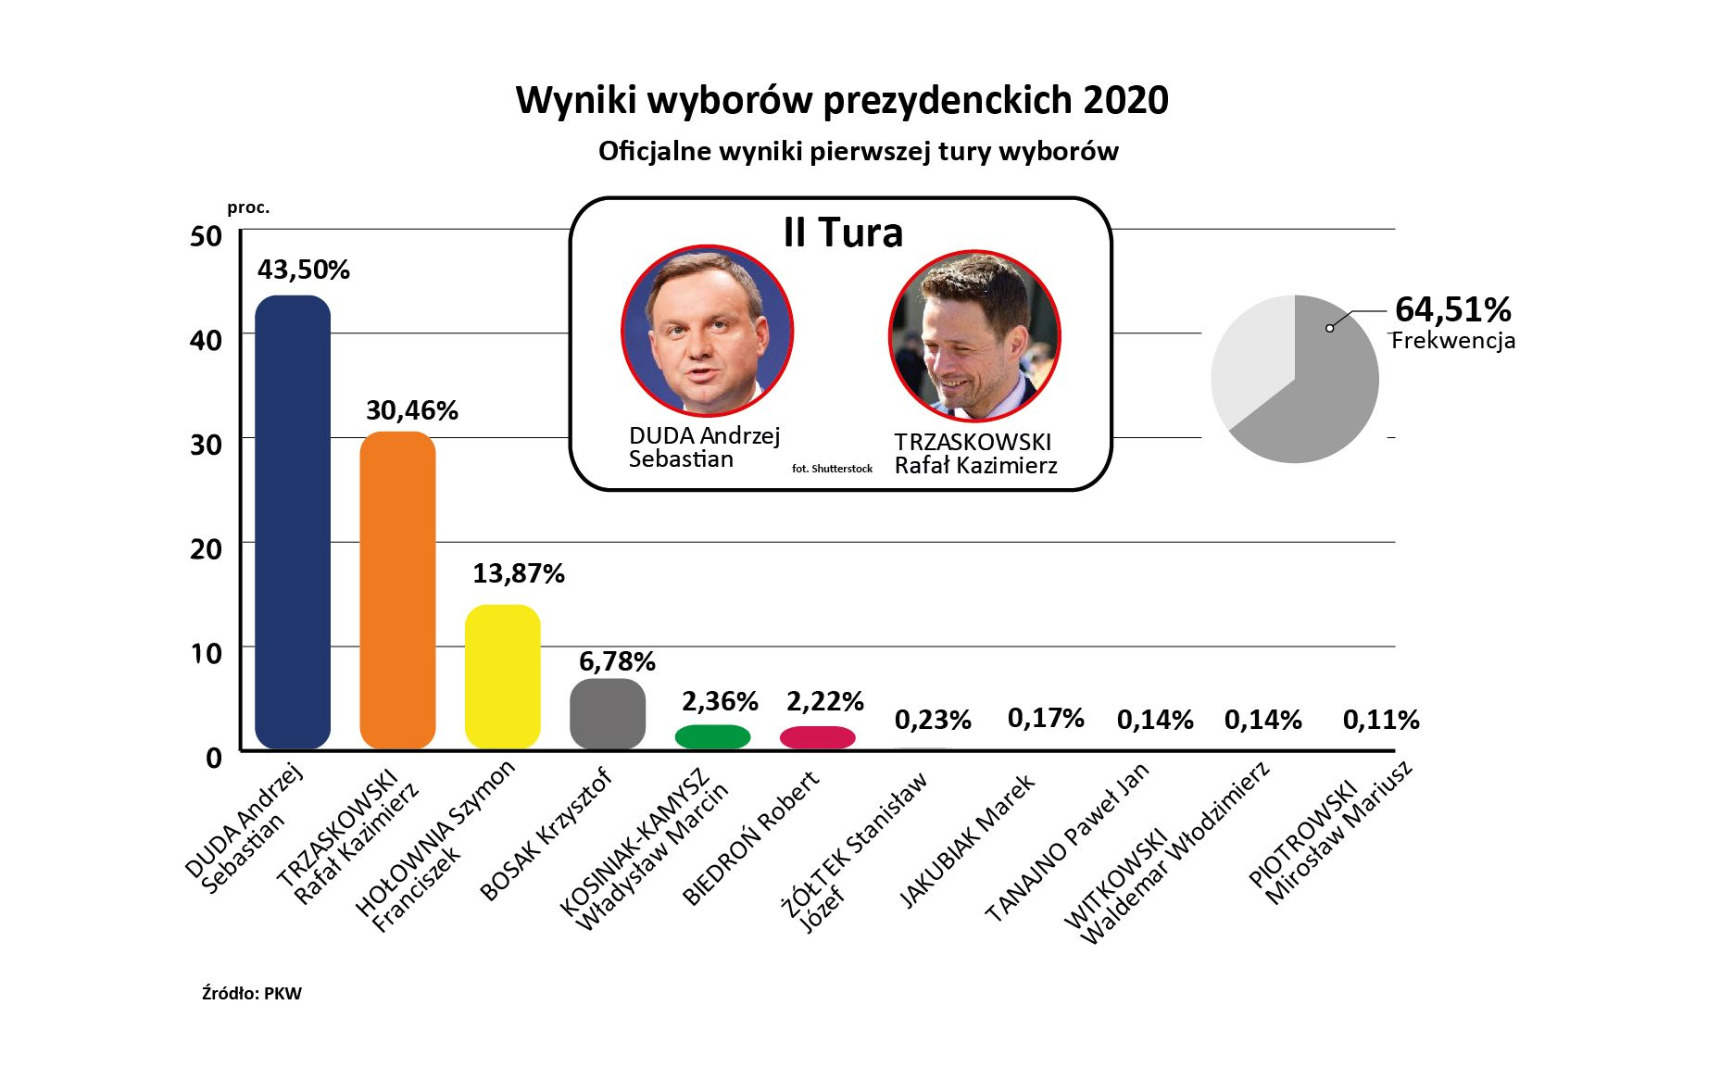 PKW podała oficjalne wyniki wyborów - GazetaPrawna.pl